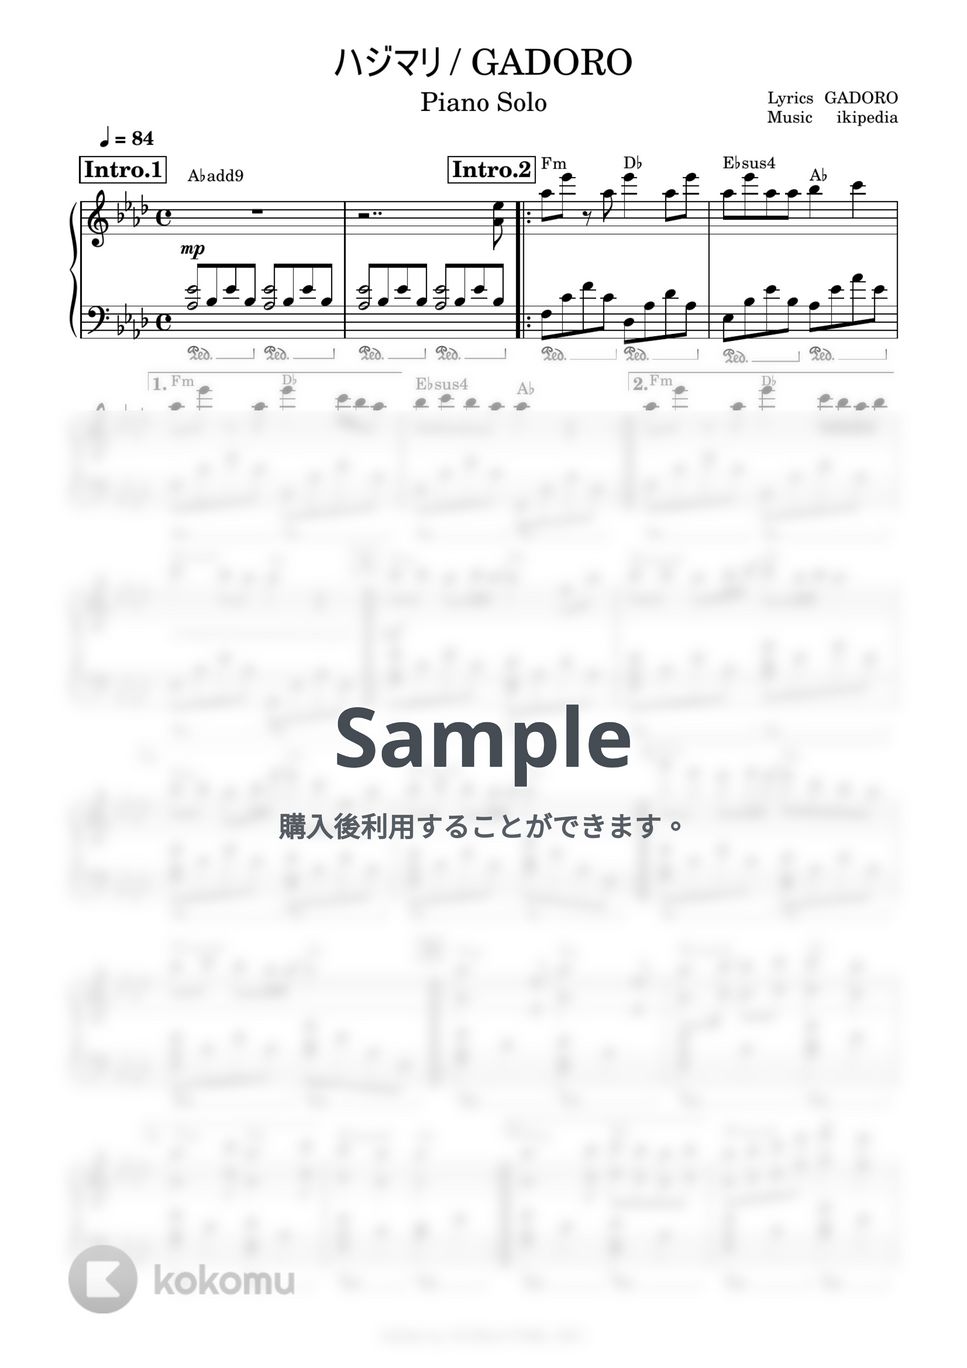 GADORO - ハジマリ (ピアノソロ) by 鈴木建作